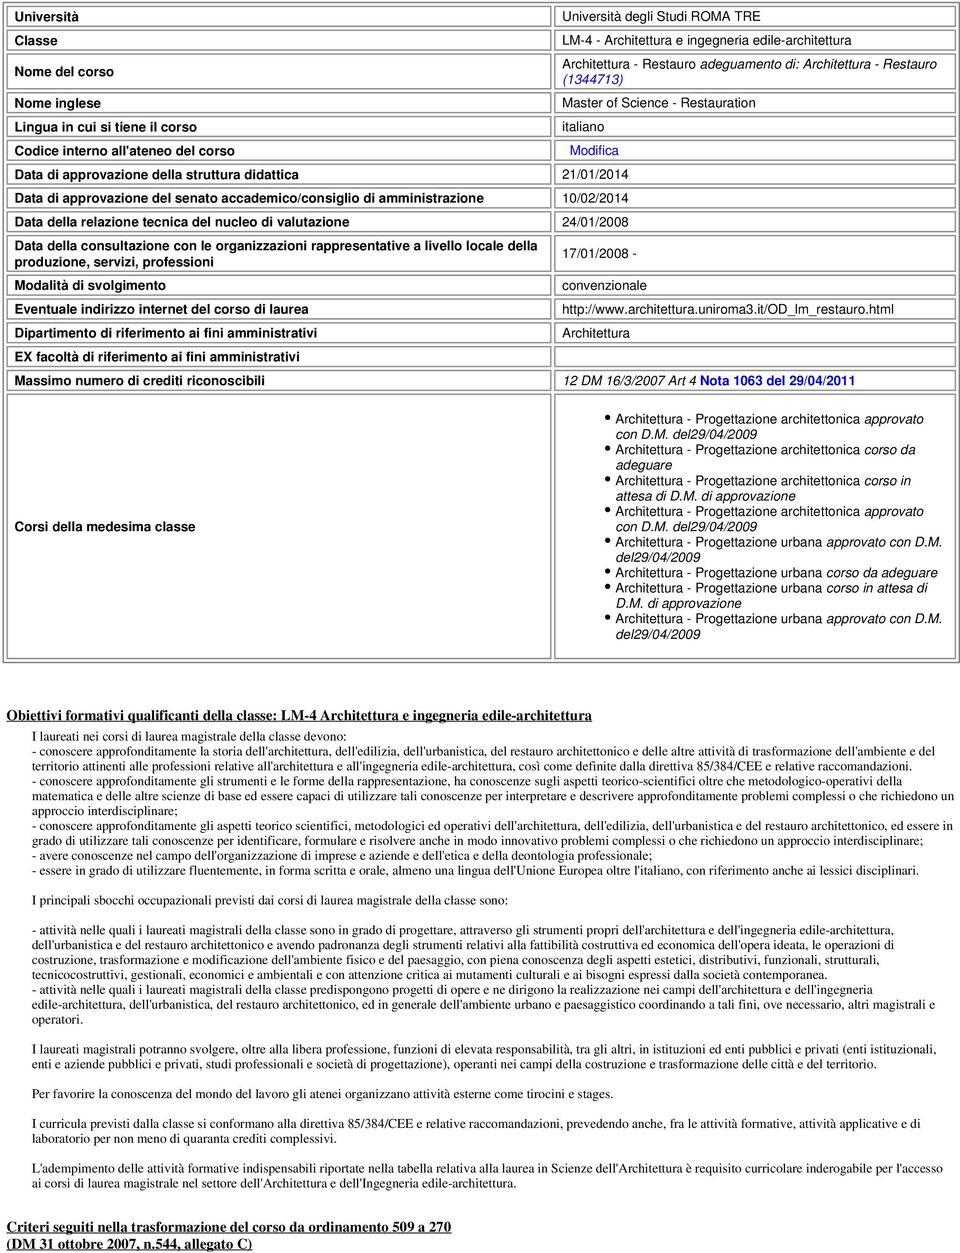 approvazione del senato accademico/consiglio di amministrazione 10/02/2014 Data della relazione tecnica del nucleo di valutazione 24/01/2008 Data della consultazione con le organizzazioni